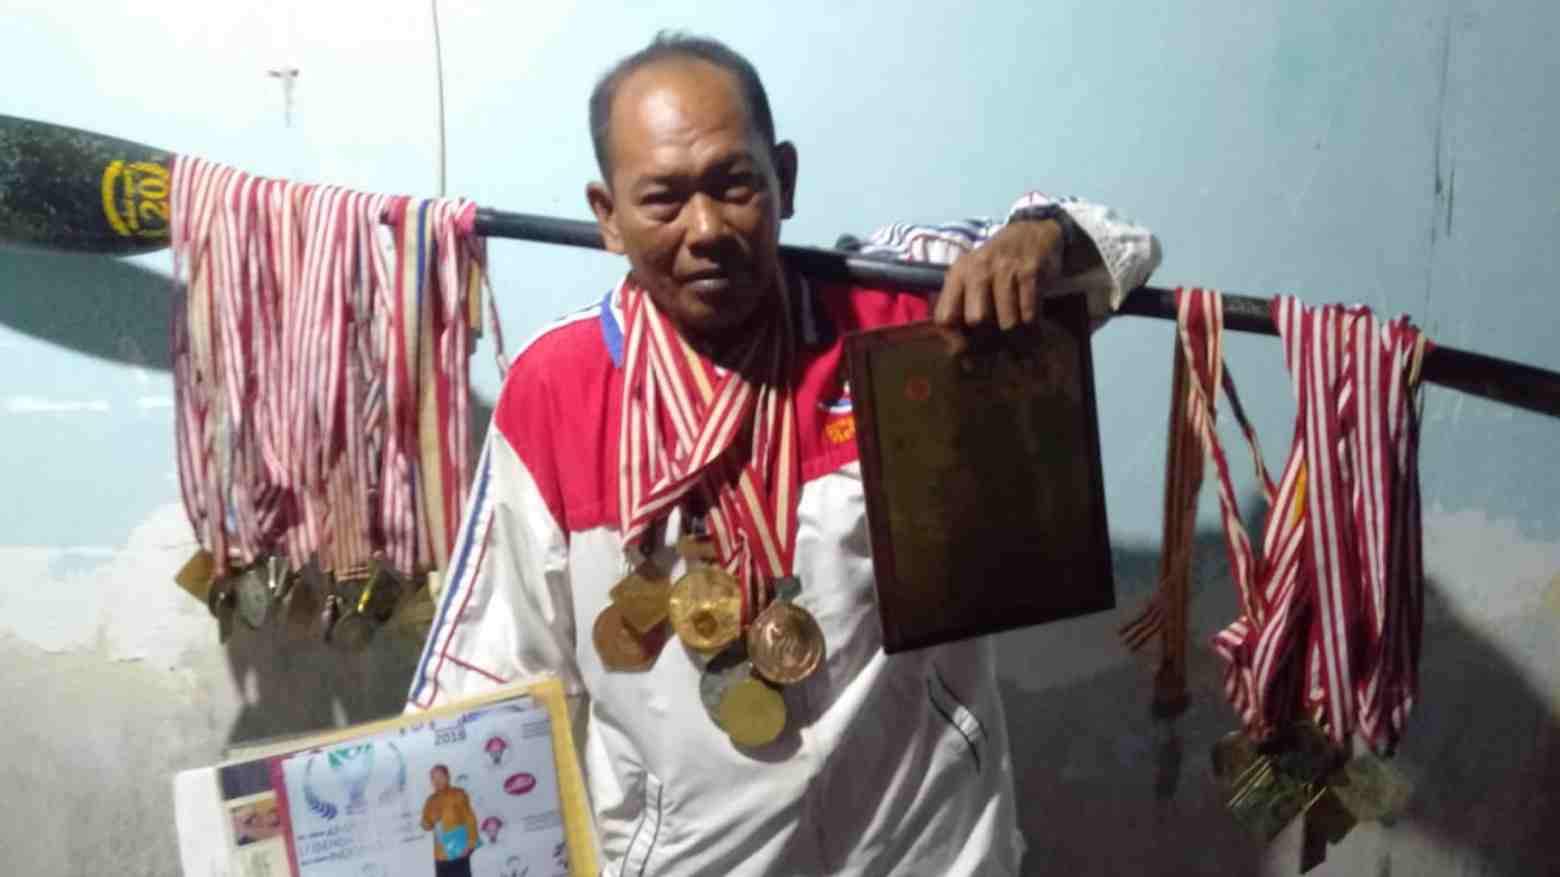 Nasib Abdul Razak, Mantan Atlet Dayung Nasional yang Kini Memilih Jadi Nelayan